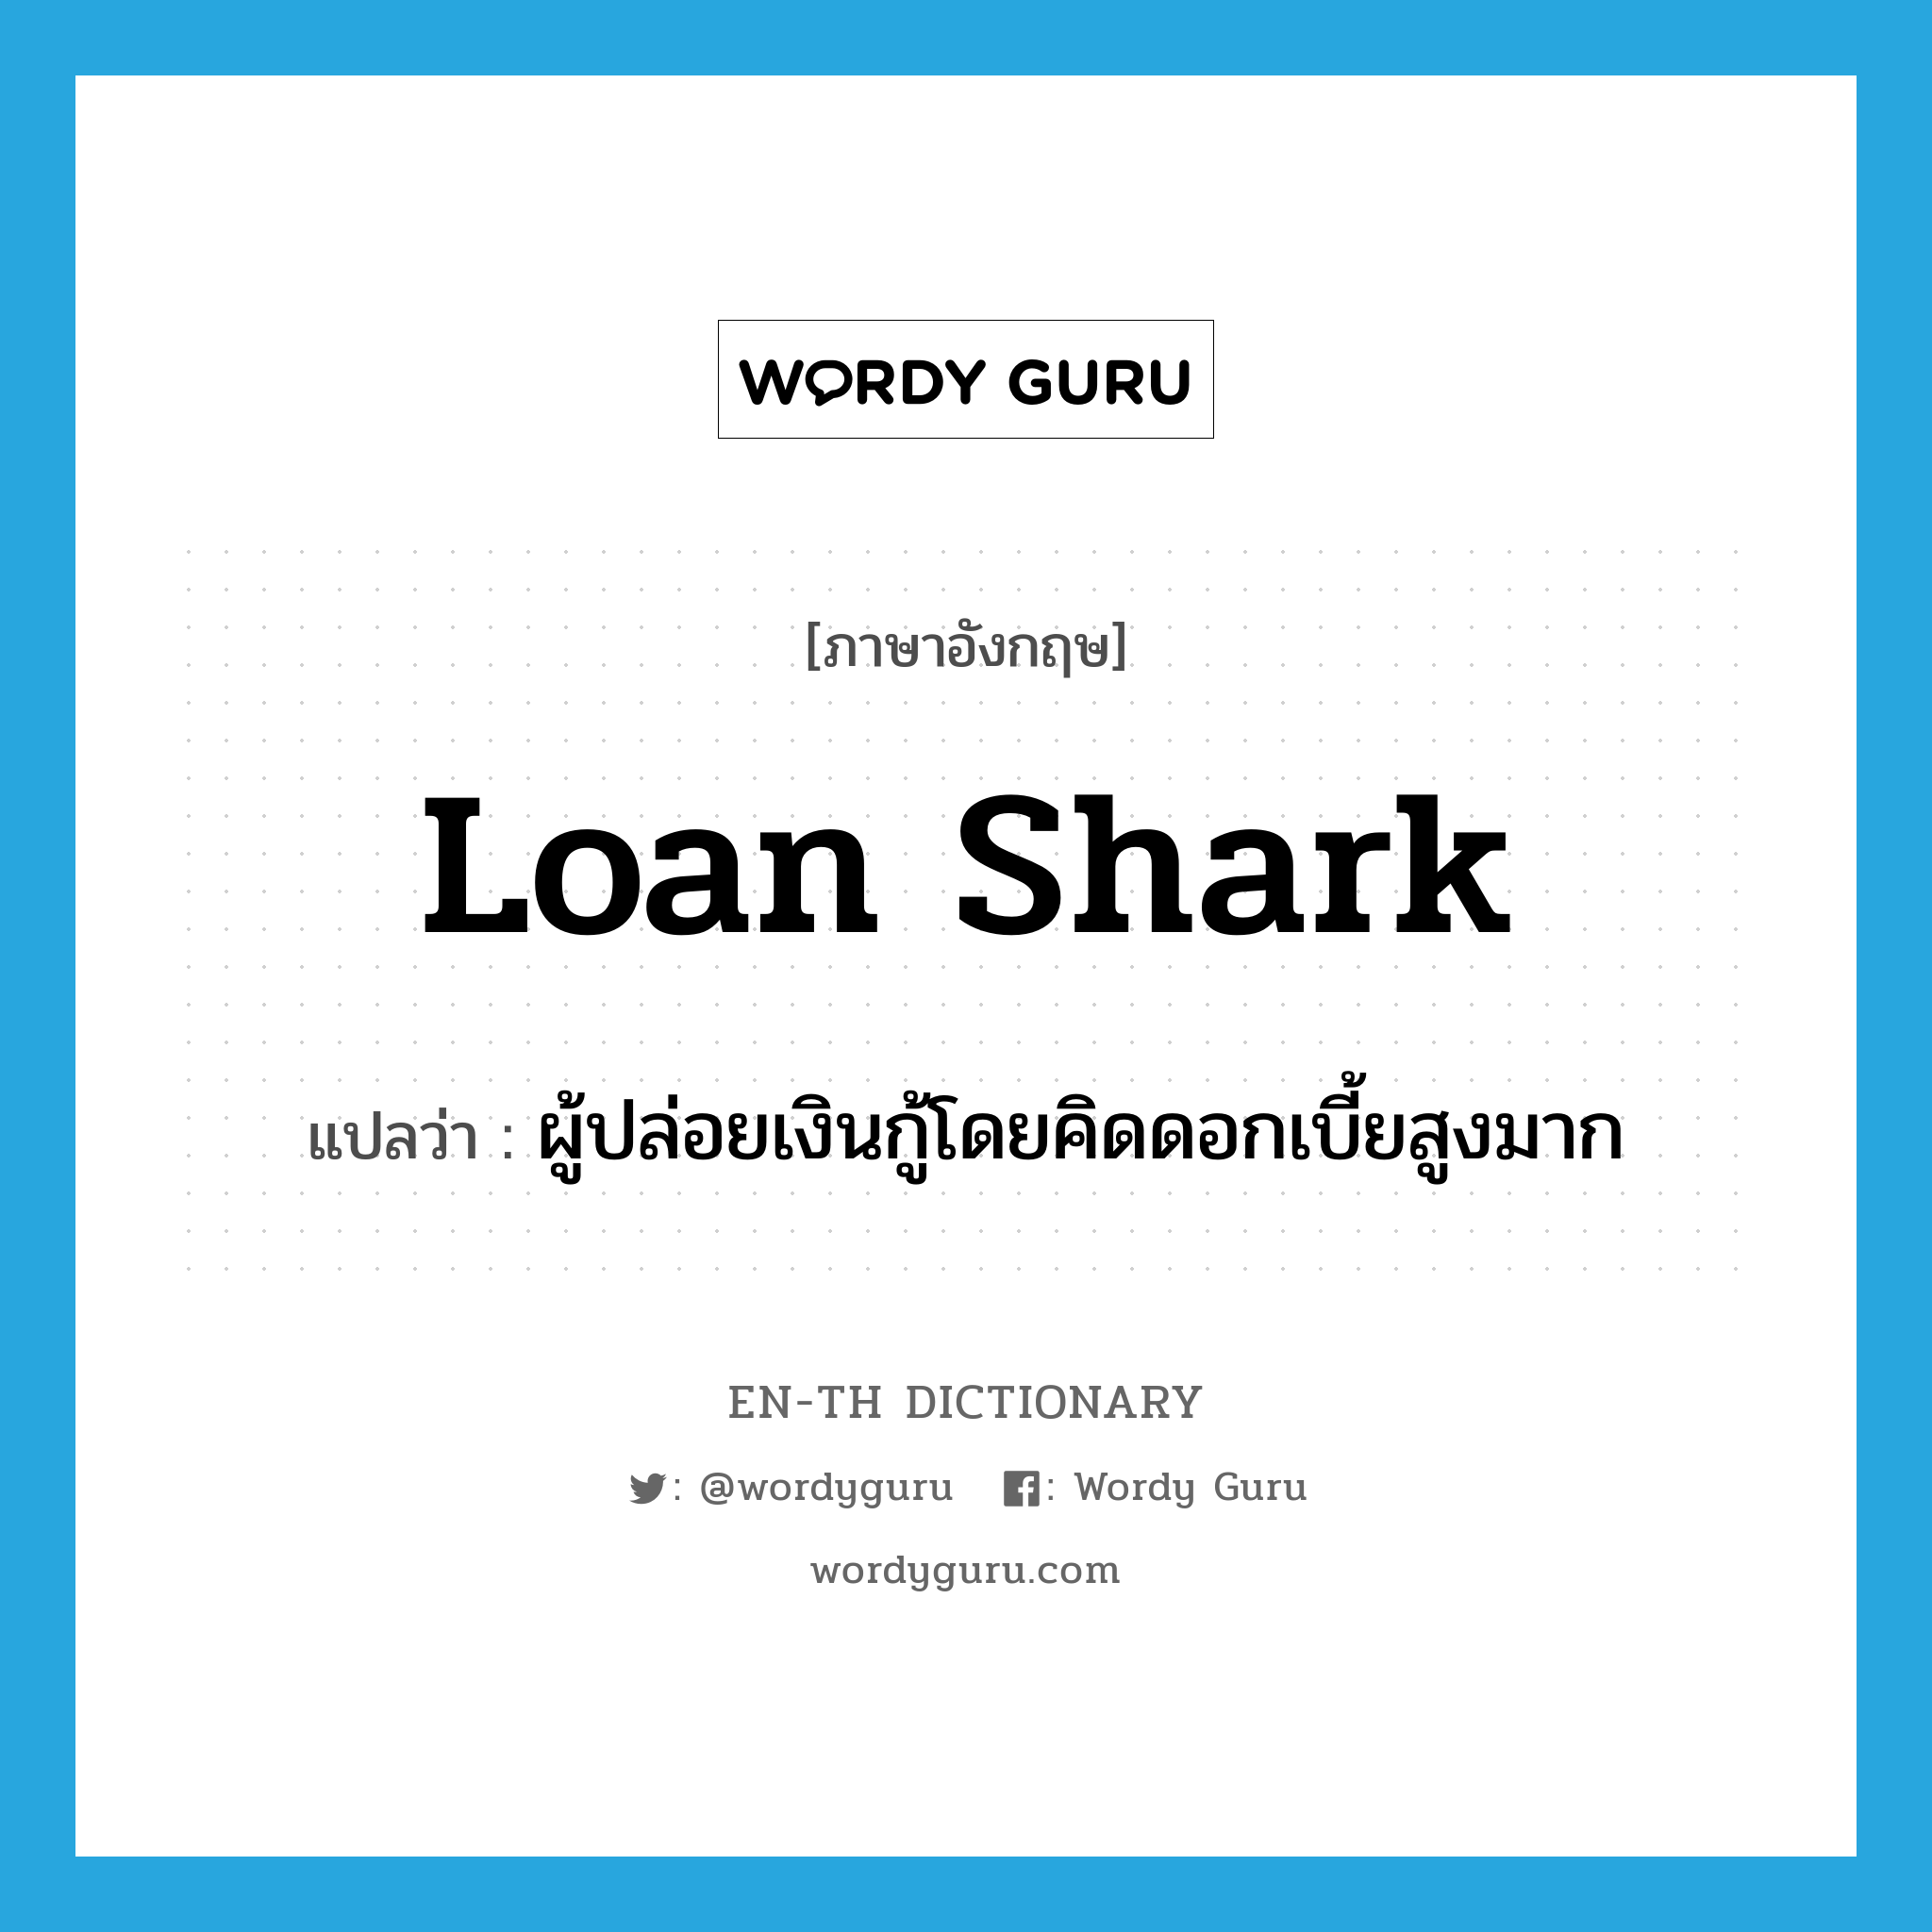 loan shark แปลว่า?, คำศัพท์ภาษาอังกฤษ loan shark แปลว่า ผู้ปล่อยเงินกู้โดยคิดดอกเบี้ยสูงมาก ประเภท N หมวด N